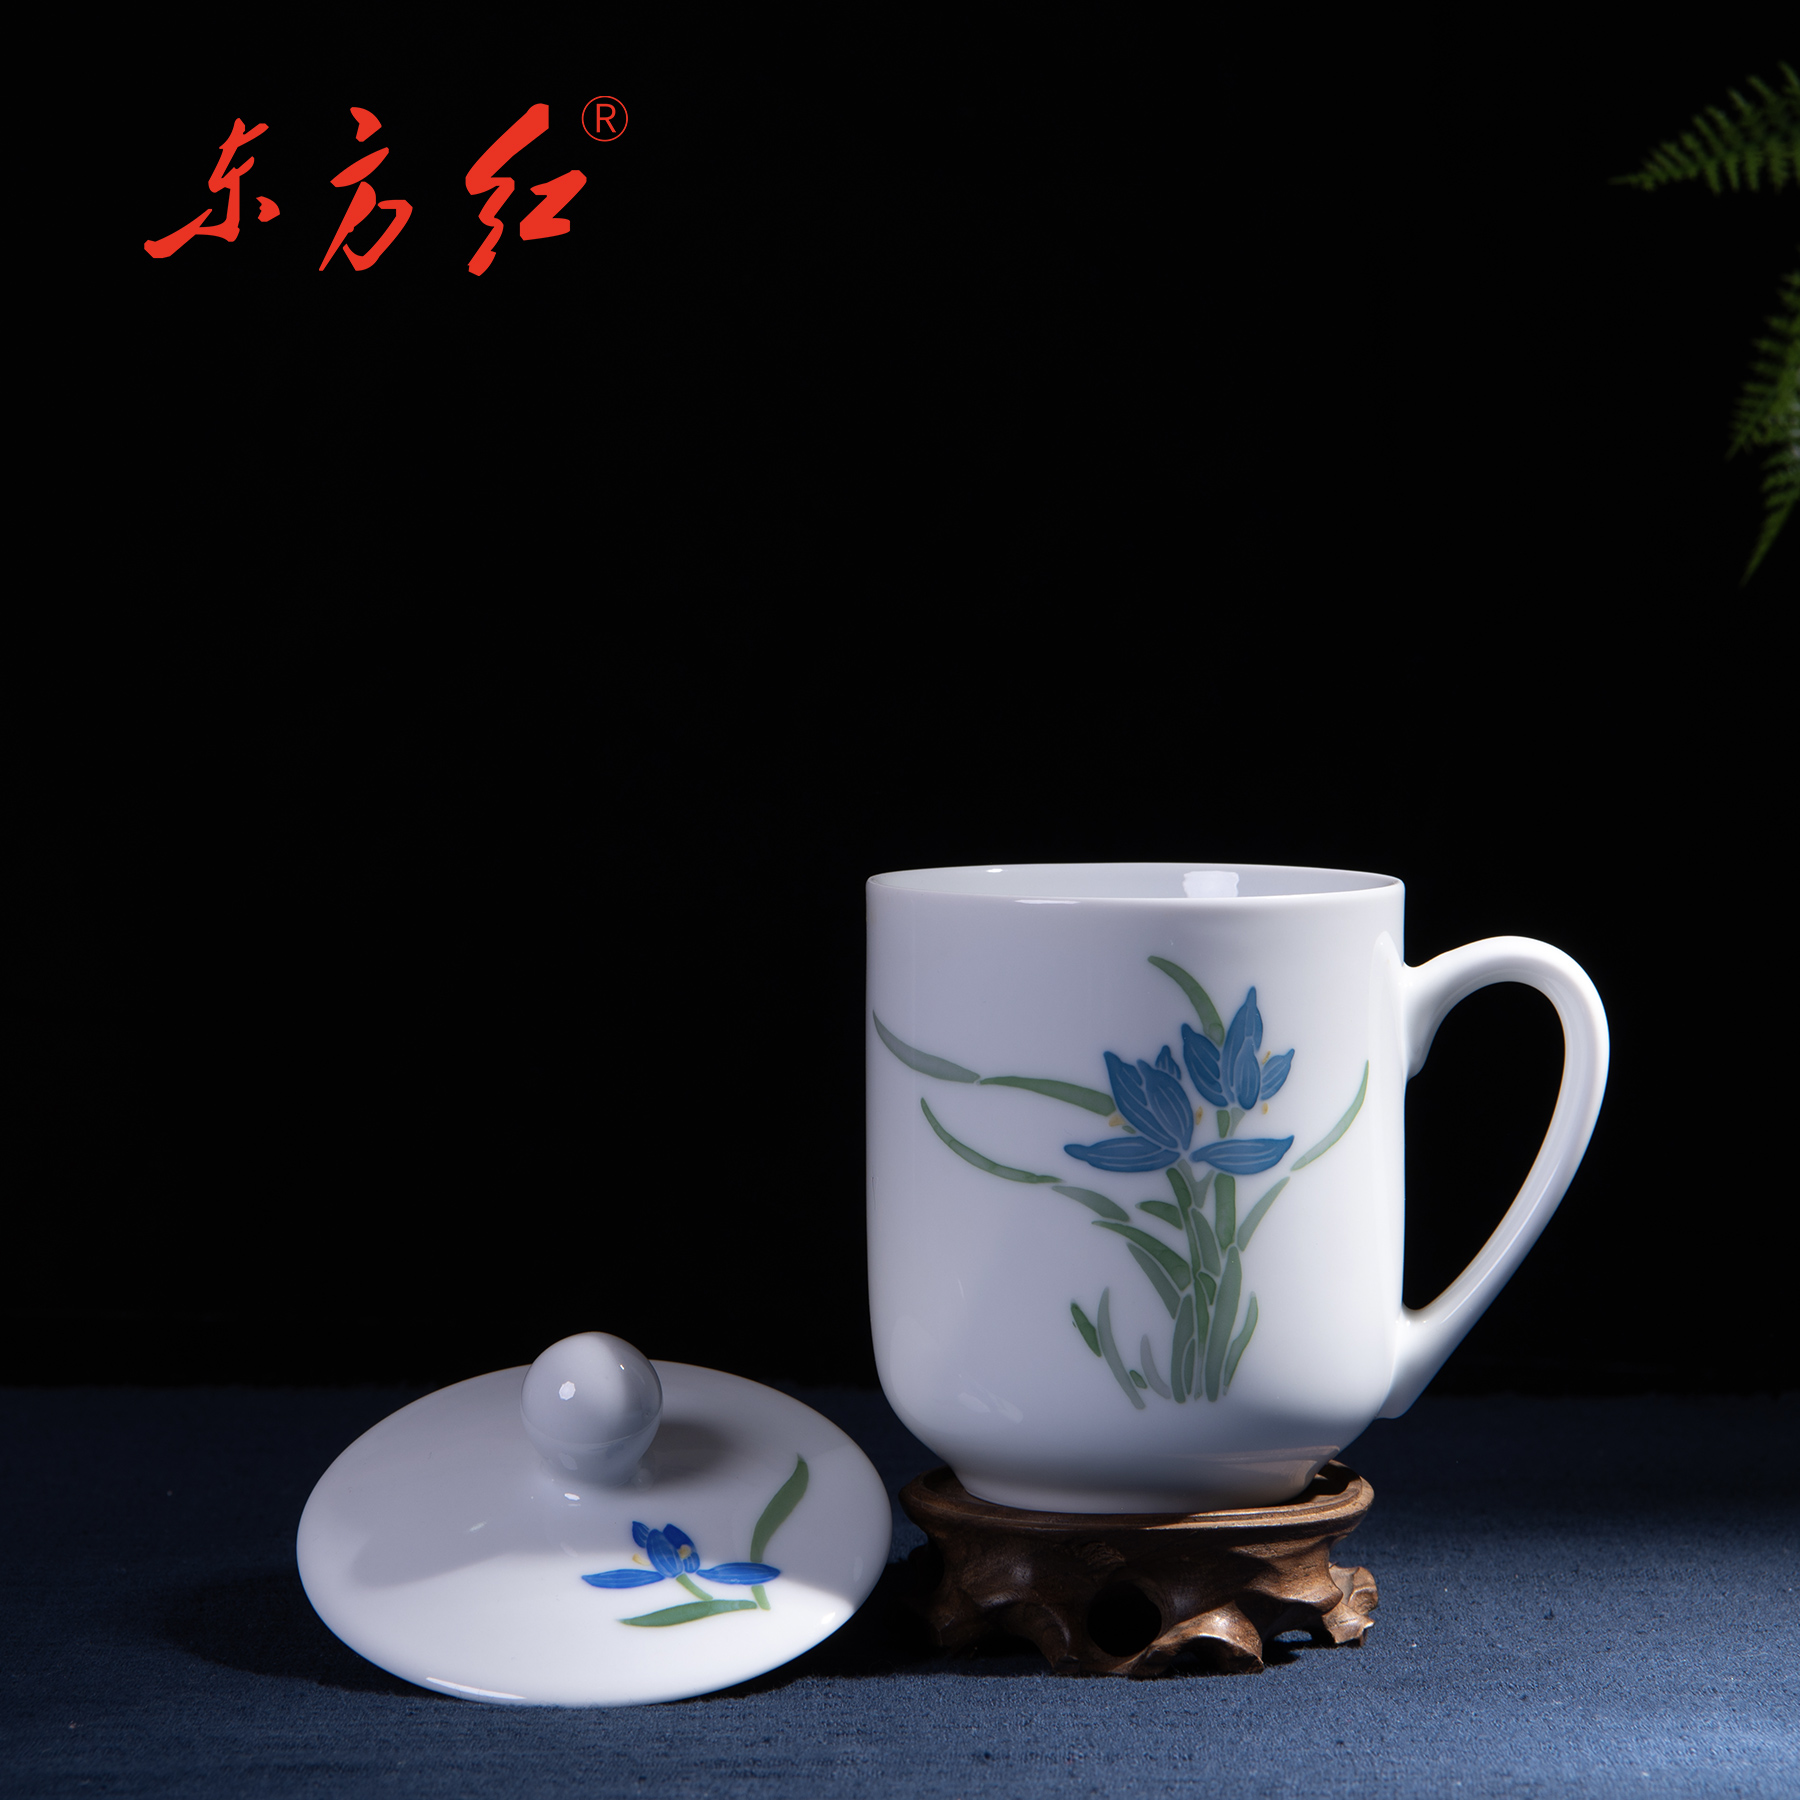 常委杯 - 醴陵东方红陶瓷有限公司 原醴陵国光瓷业重点品牌“东方红”